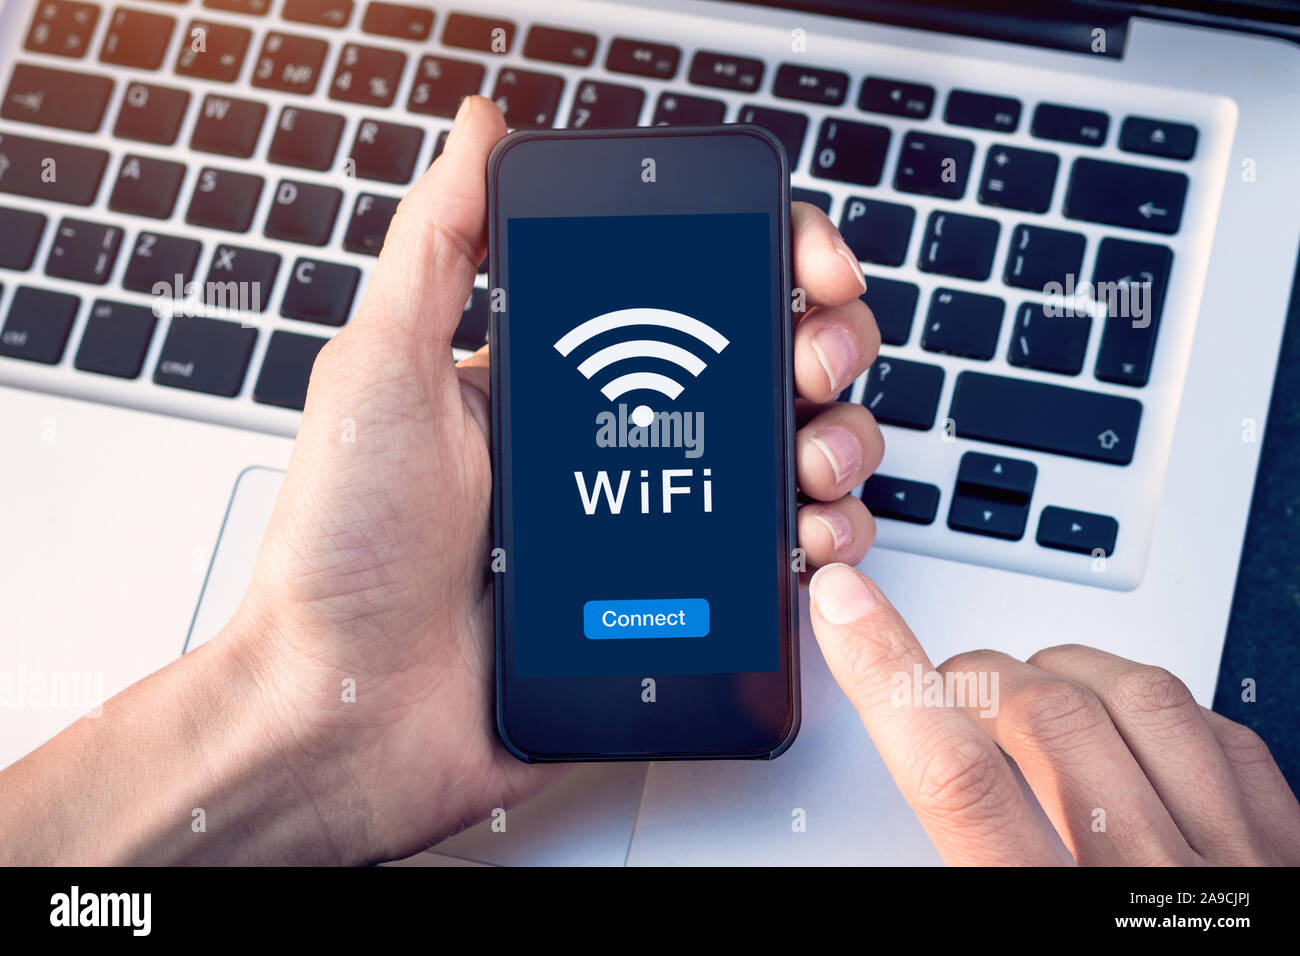 Verbindung zu WiFi Wireless Internet Network mit Smartphone. Im Café oder Hotel mit Button auf dem mobilen Gerät Bildschirm, kostenfreie öffentliche Hotspots sicheren acce Stockfoto